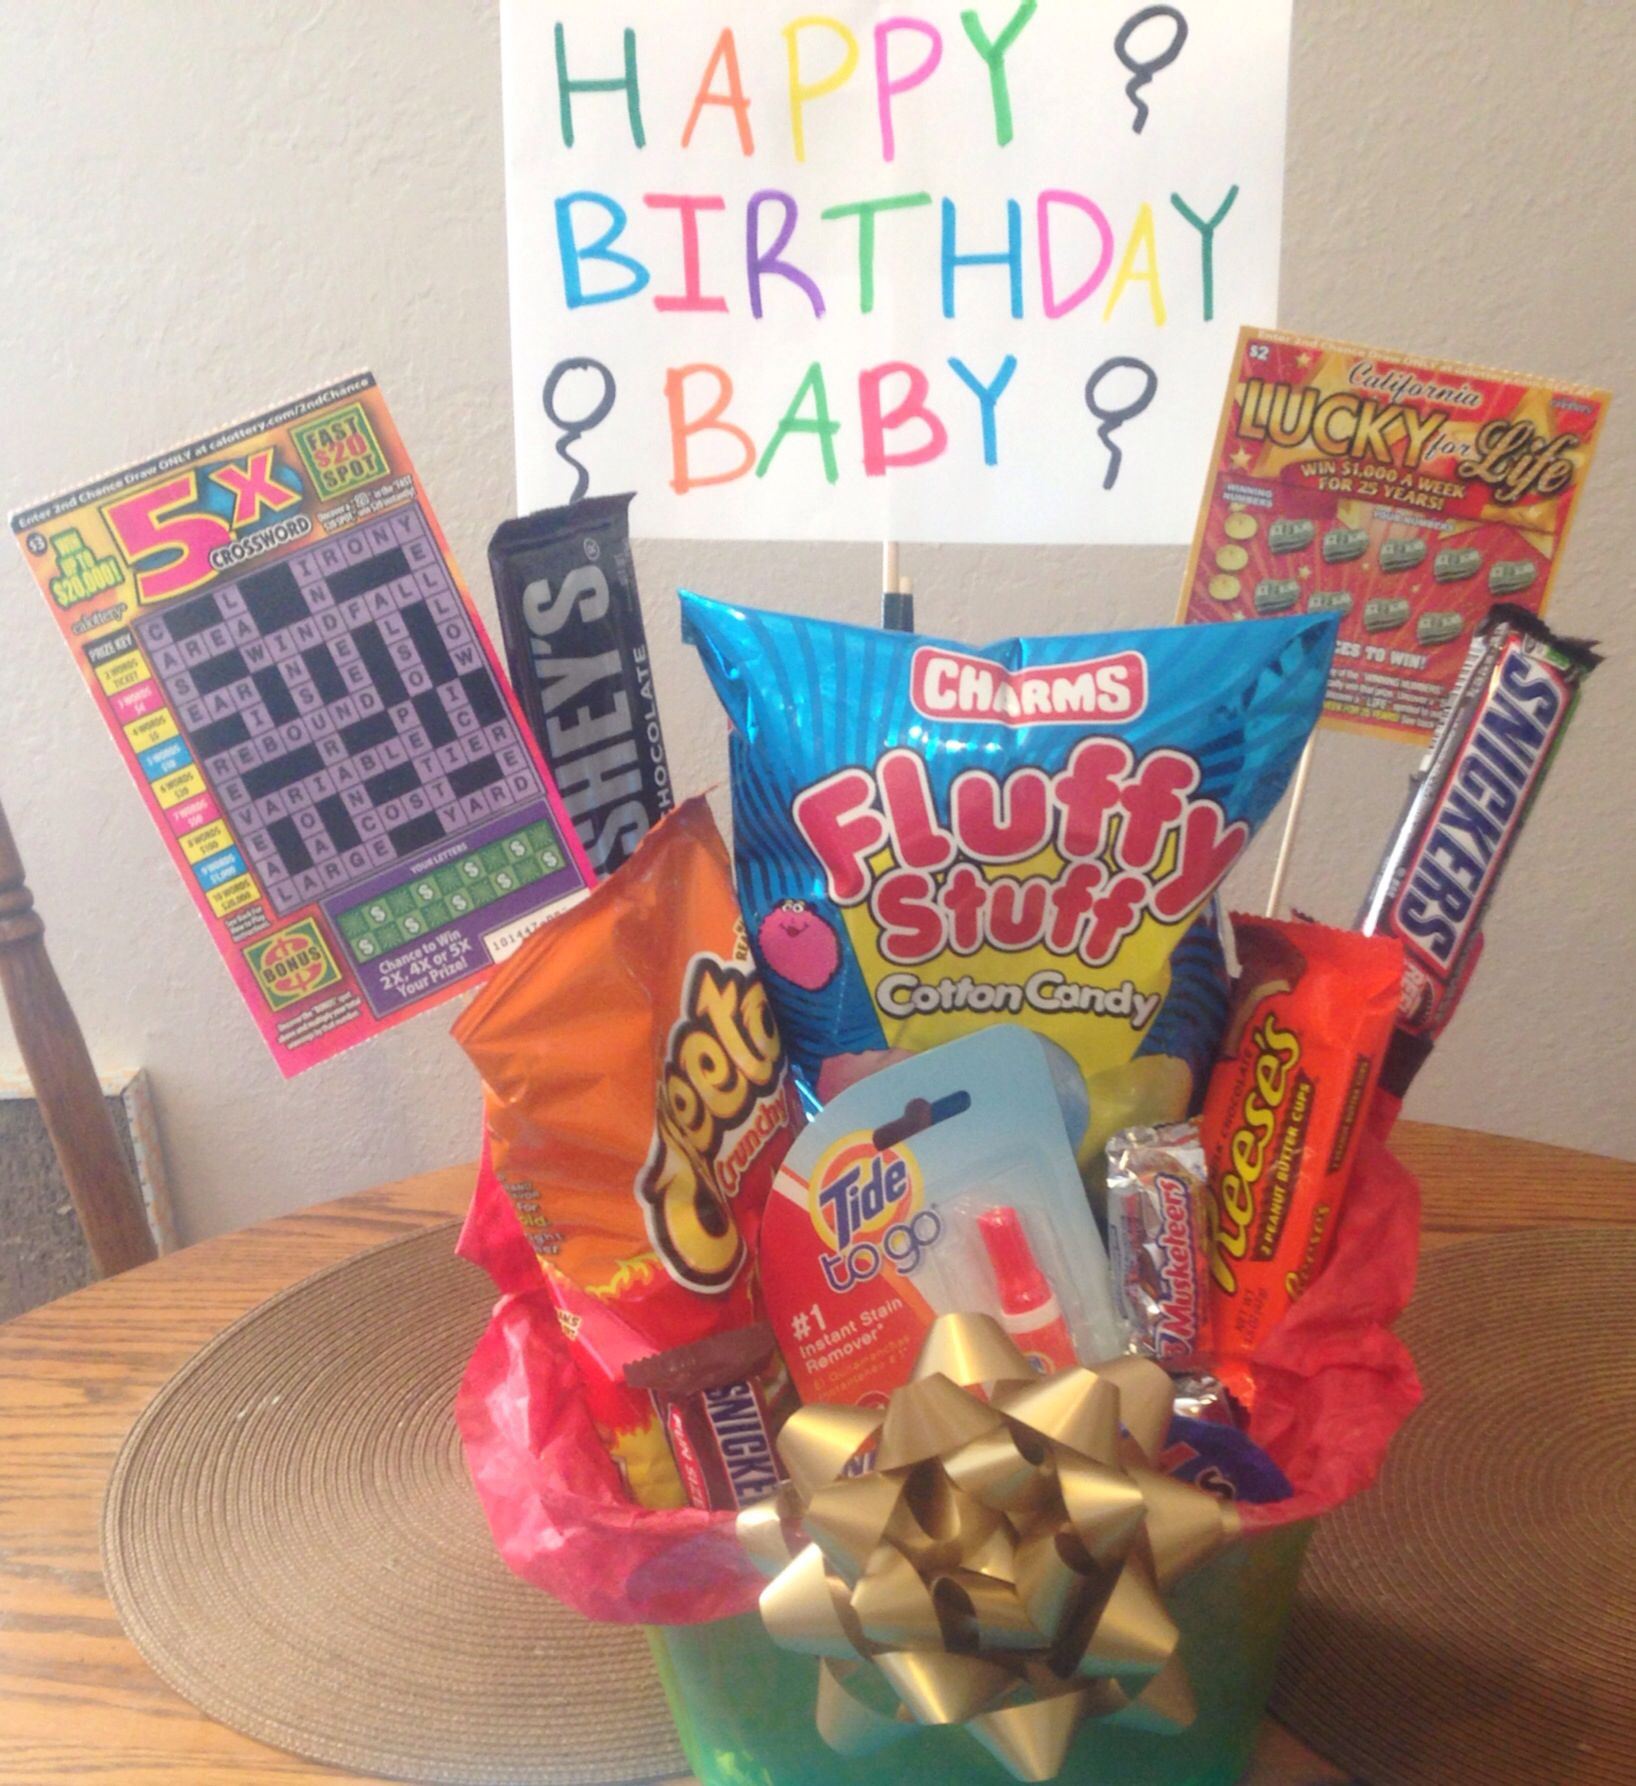 Best Boyfriend Birthday Gifts
 Gift Ideas for Boyfriend Gift Ideas For Boyfriend s 22nd